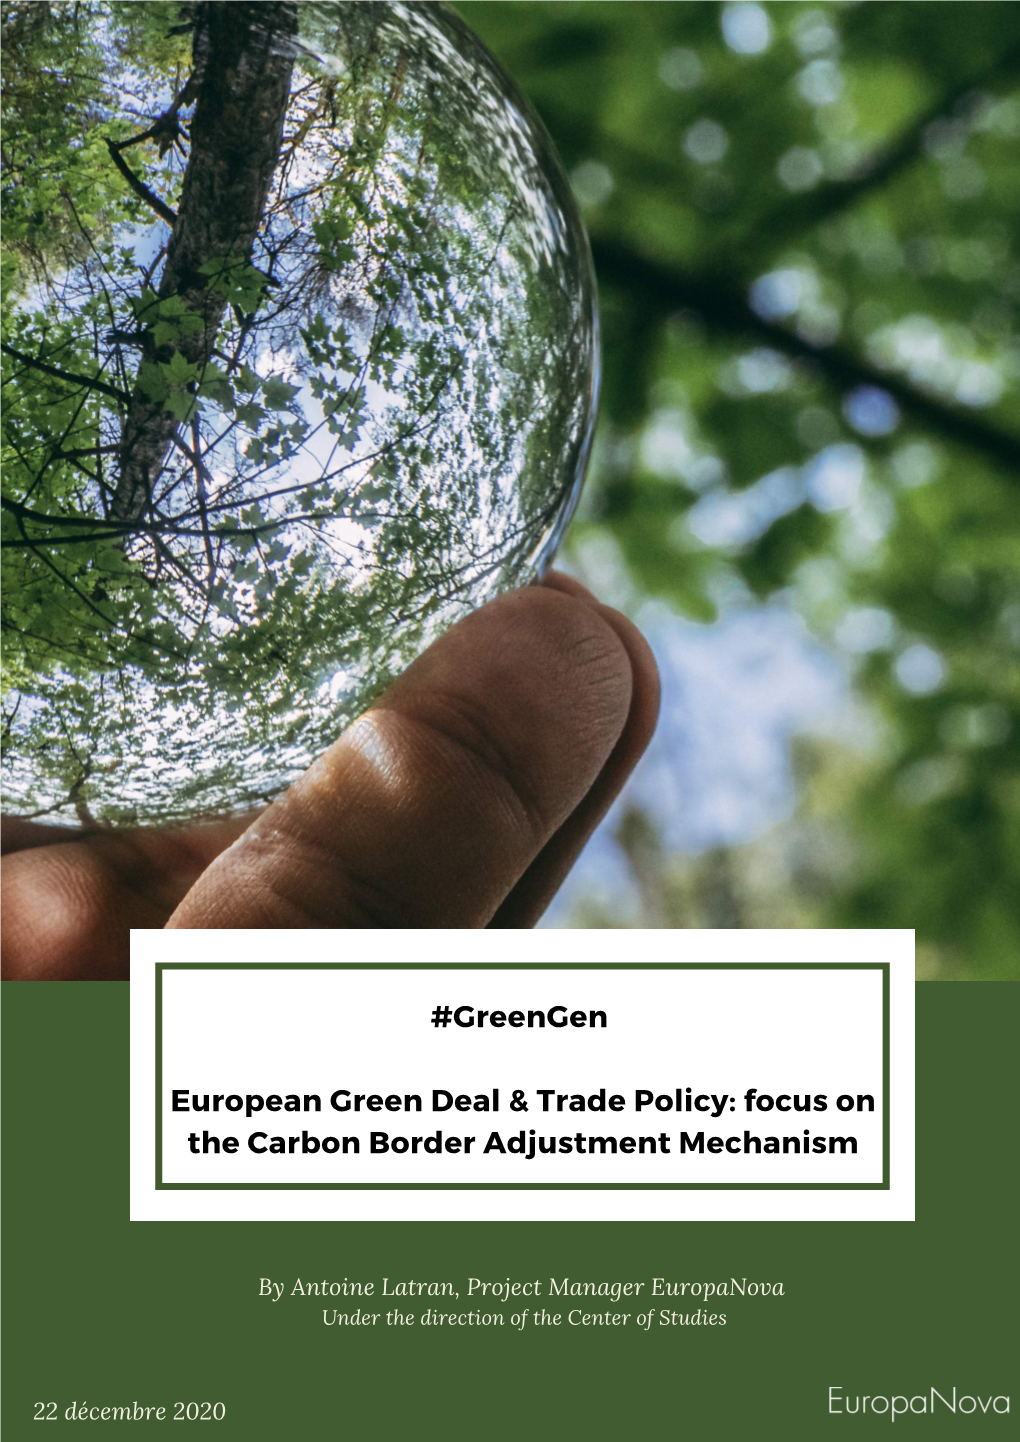 I. the Carbon Border Adjustment Mechanism: Implementation & Design